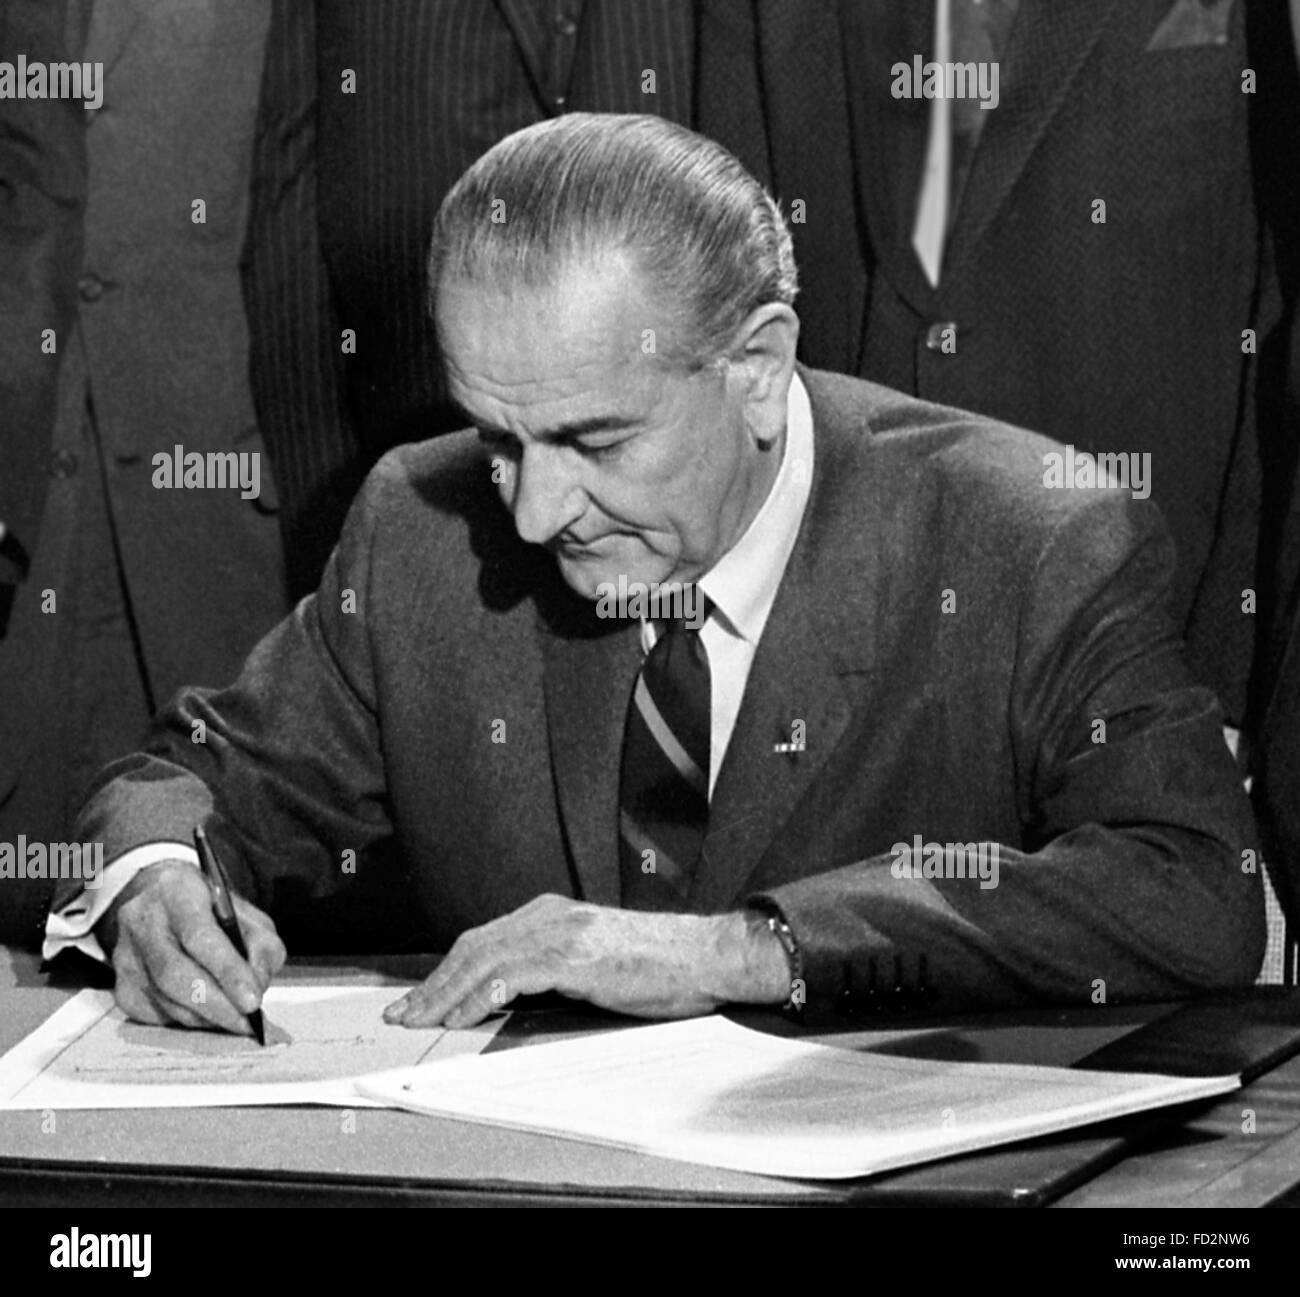 Lyndon B Johnson, il trentaseiesimo Presidente degli Stati Uniti d'America, la firma del 1968 Civil Rights Act, 11 aprile 1968. Foto di Warren K Leffler, U.S. News & World Report Magazine. Foto Stock